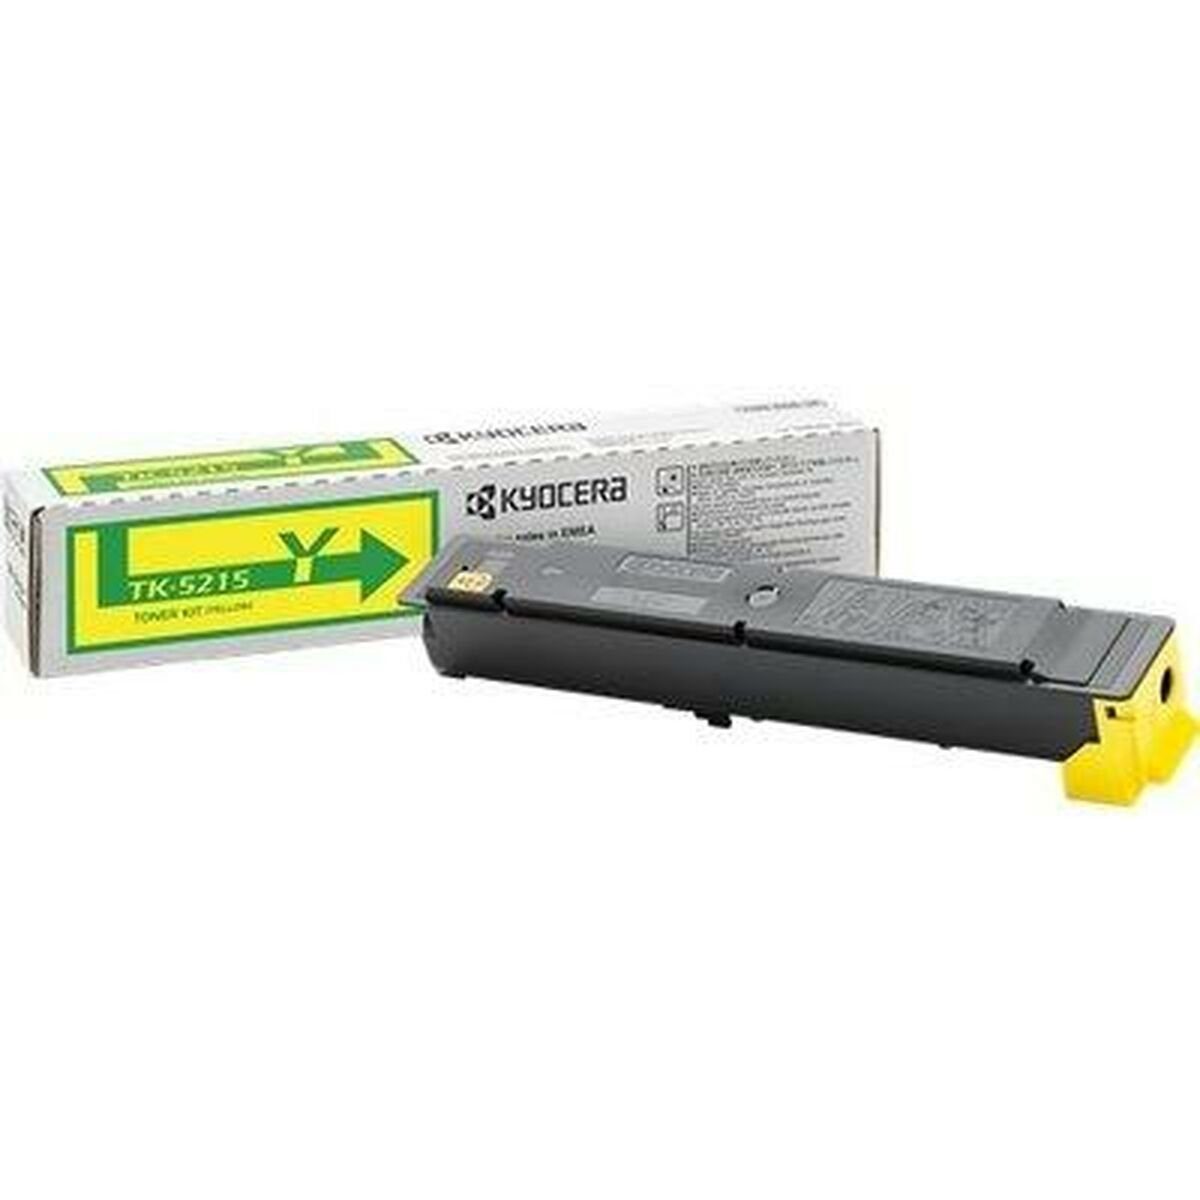 Kyocera Laserdrucker Toner Kyocera TK-5215Y Gelb Tintenpatrone